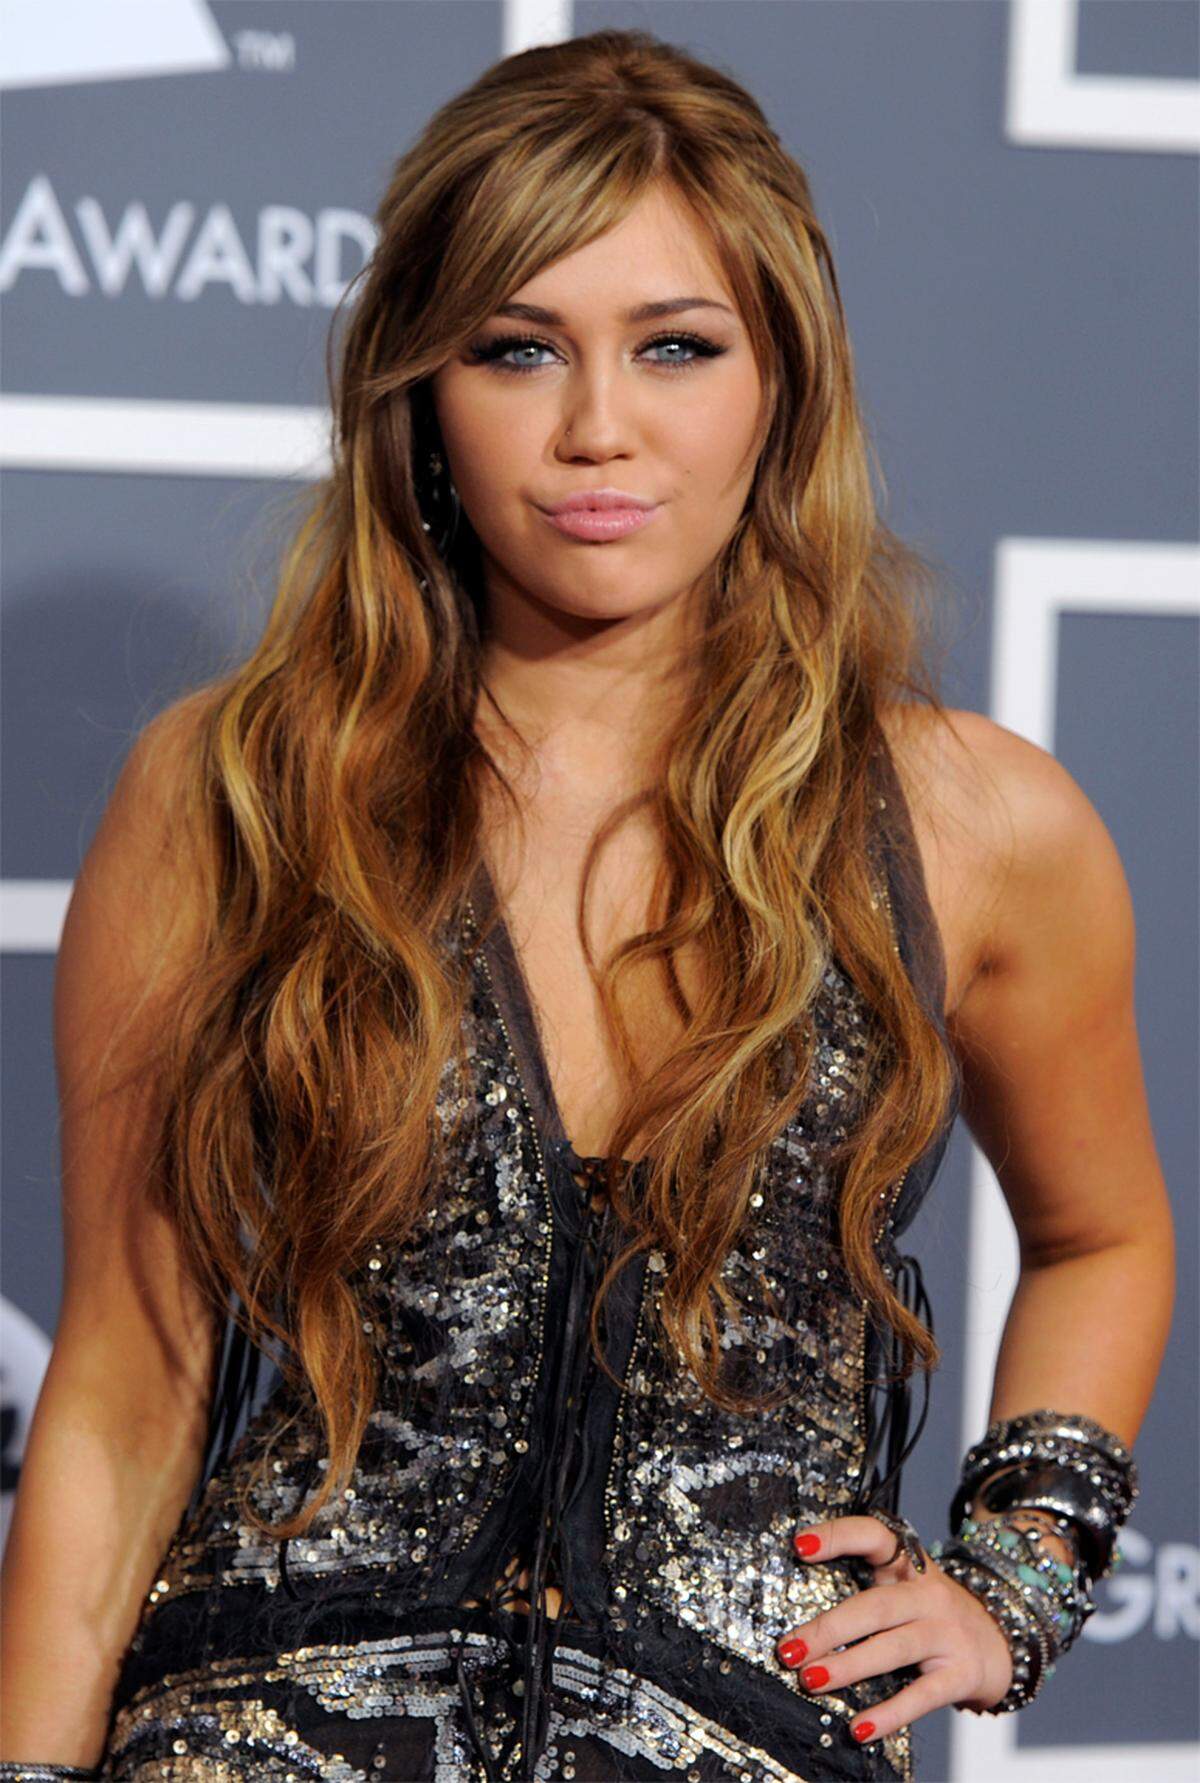 "Sie ist jung, dumm und alt genug zum *****" - Dieser Slogan wirbt für "Finally Miley", eine Sexpuppe, die Miley Cyrus optisch nachempfunden ist. Das war zu viel für die junge Schauspielerin. Laut US-Medien hat die 18-Jährige die Sextoy-Firma "Pipedream Production" wegen übler Nachrede auf Schadensersatz verklagt.